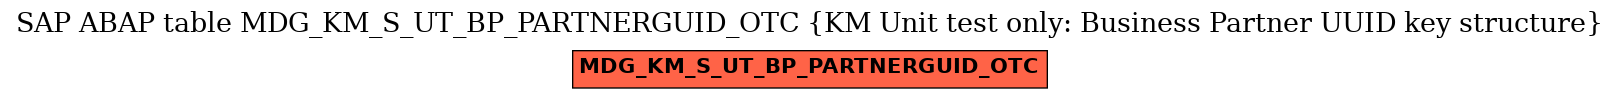 E-R Diagram for table MDG_KM_S_UT_BP_PARTNERGUID_OTC (KM Unit test only: Business Partner UUID key structure)